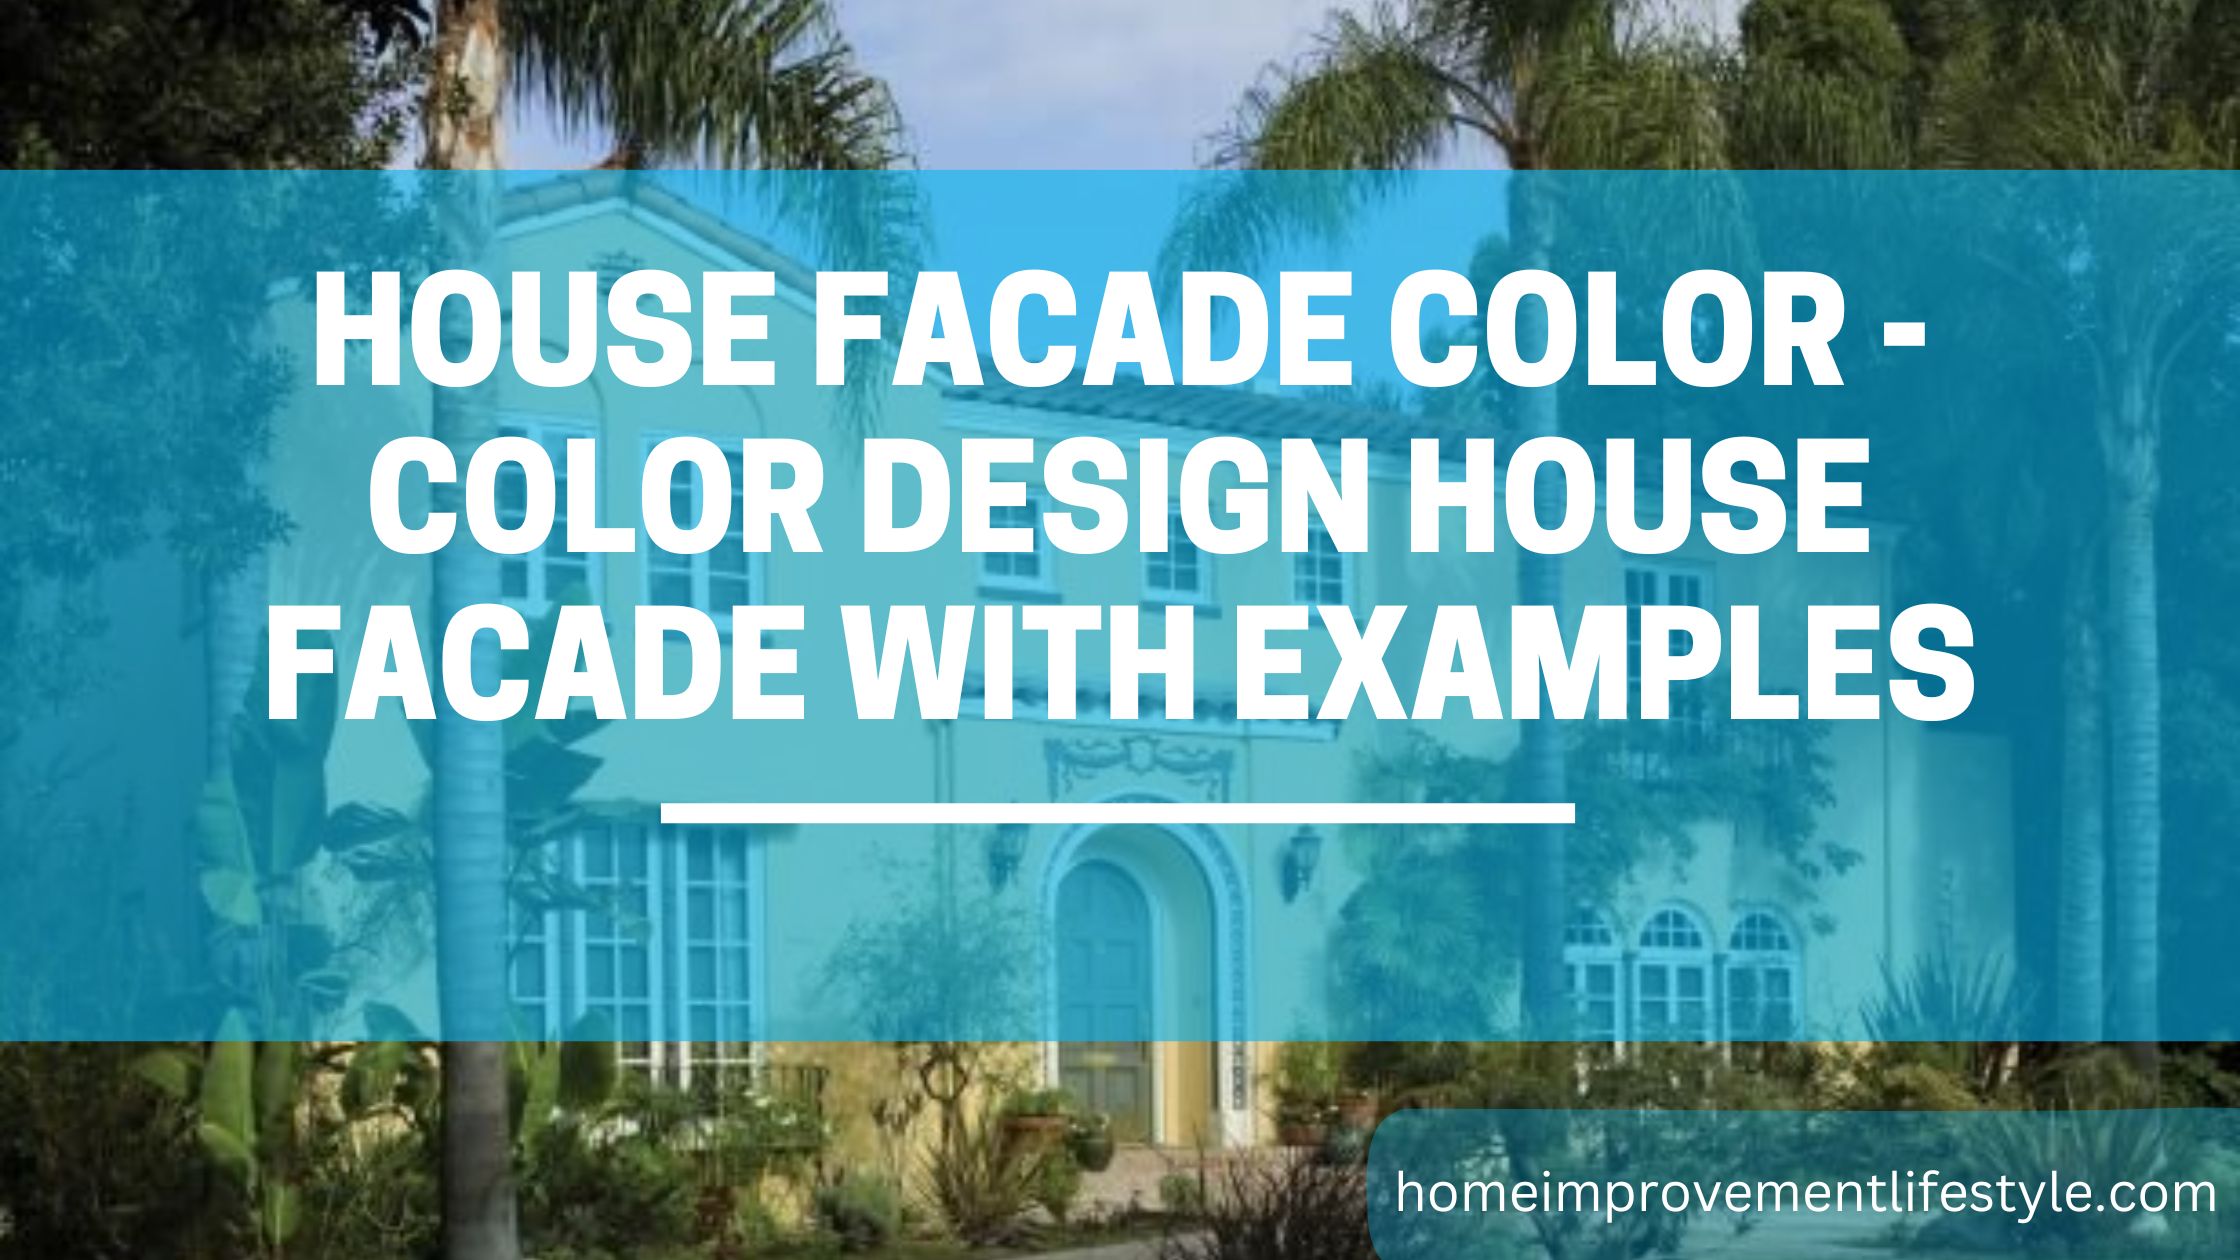 House facade color